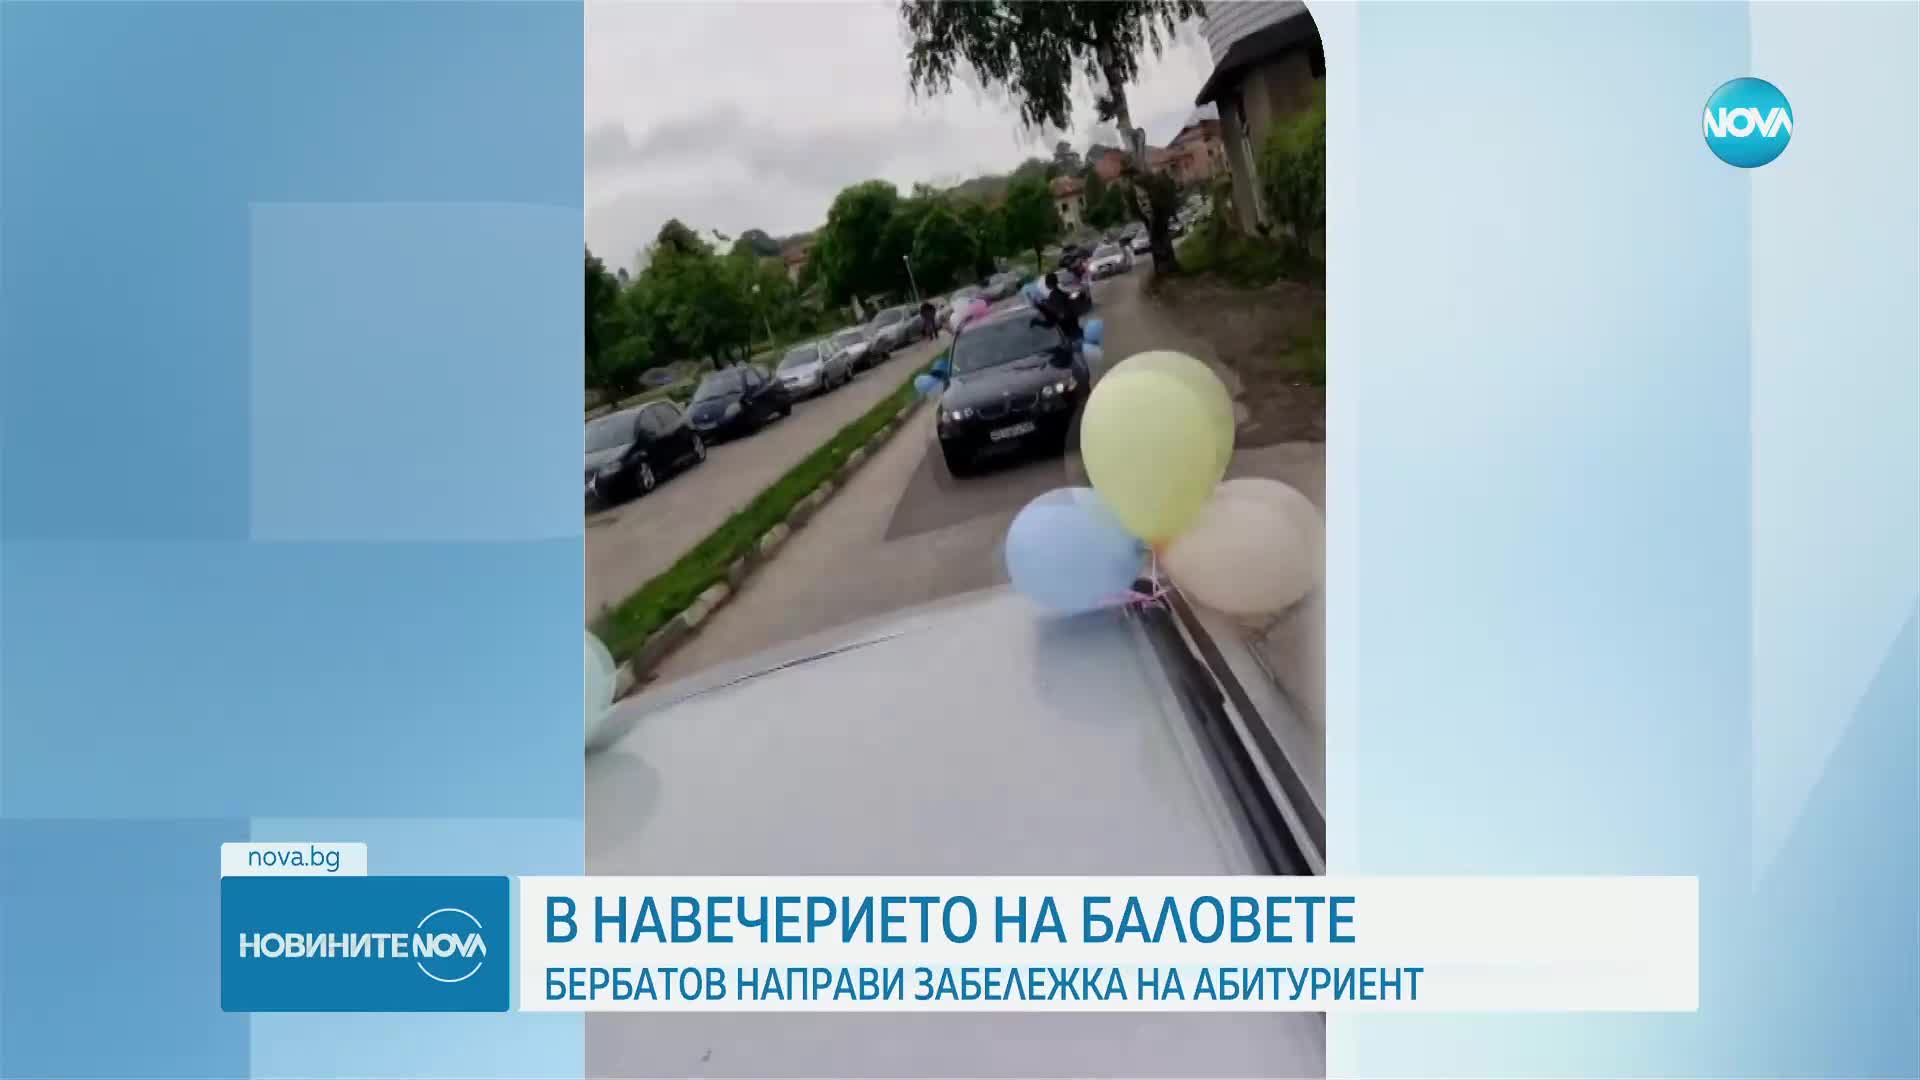 Бербатов направи забележка на абитуриент, излизащ от прозорец на кола и дишащ балон